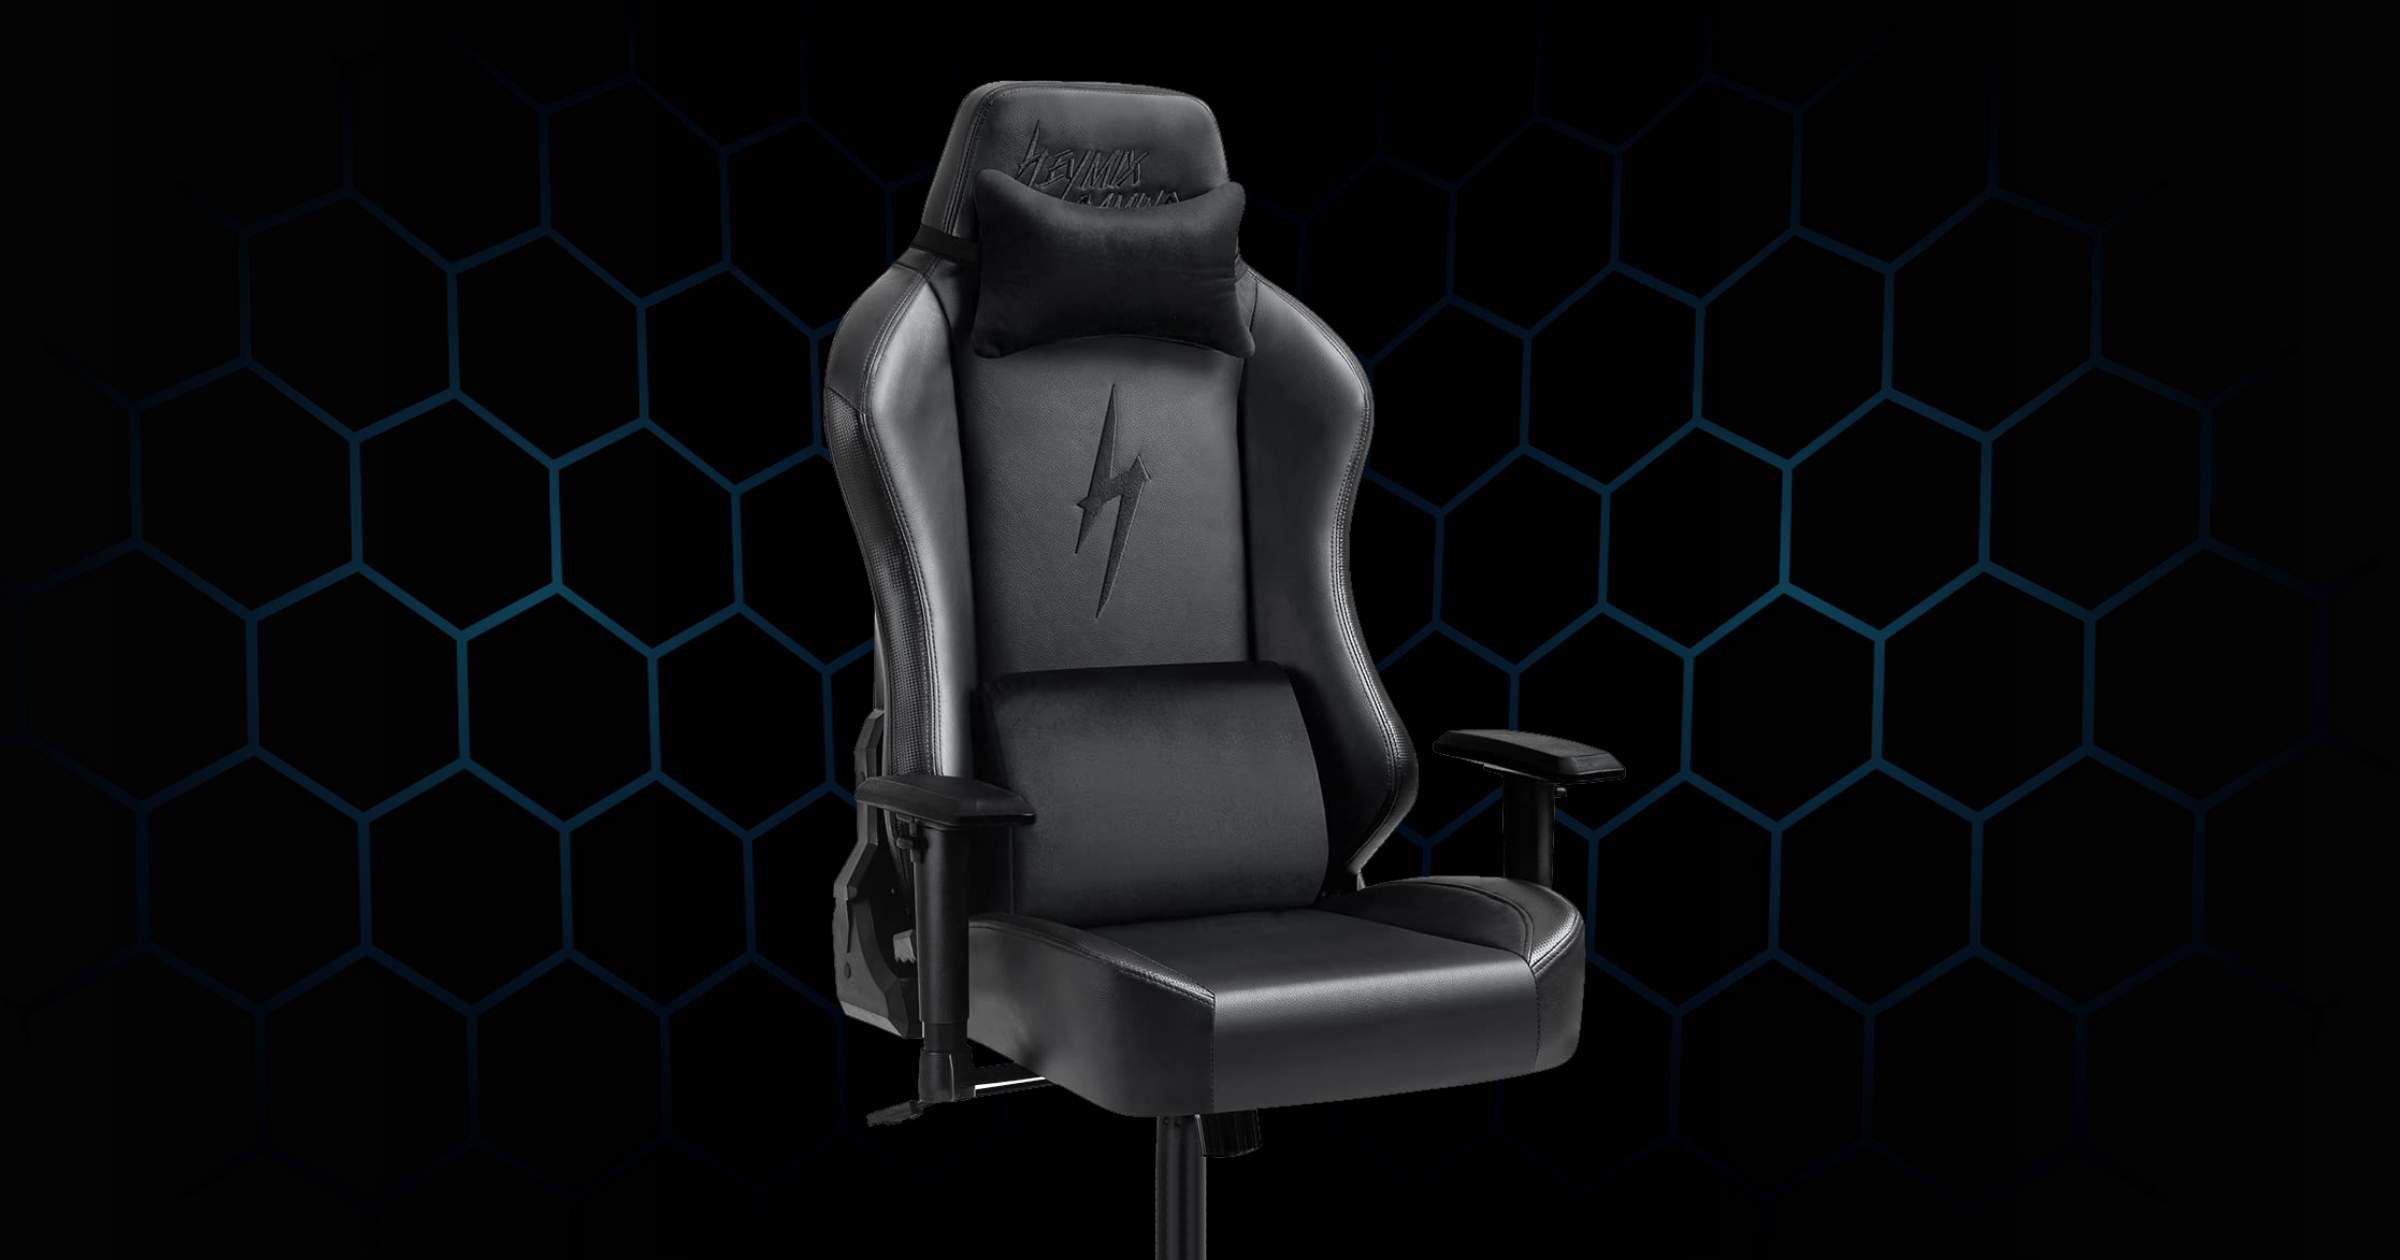 Heymix Ergonomic Gaming Chair